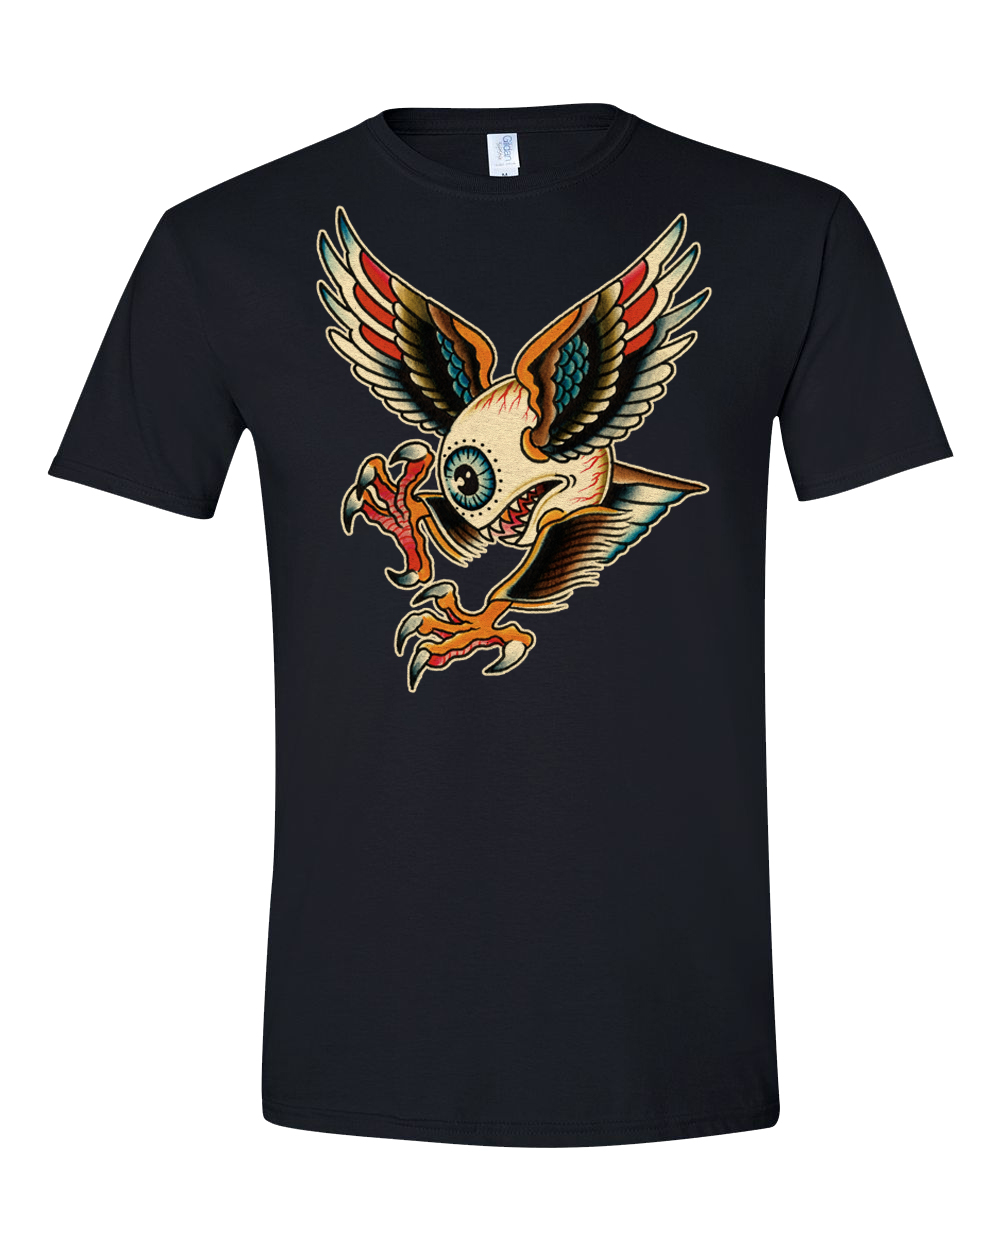 KHT “Winged Eye” Unisex T-Shirt